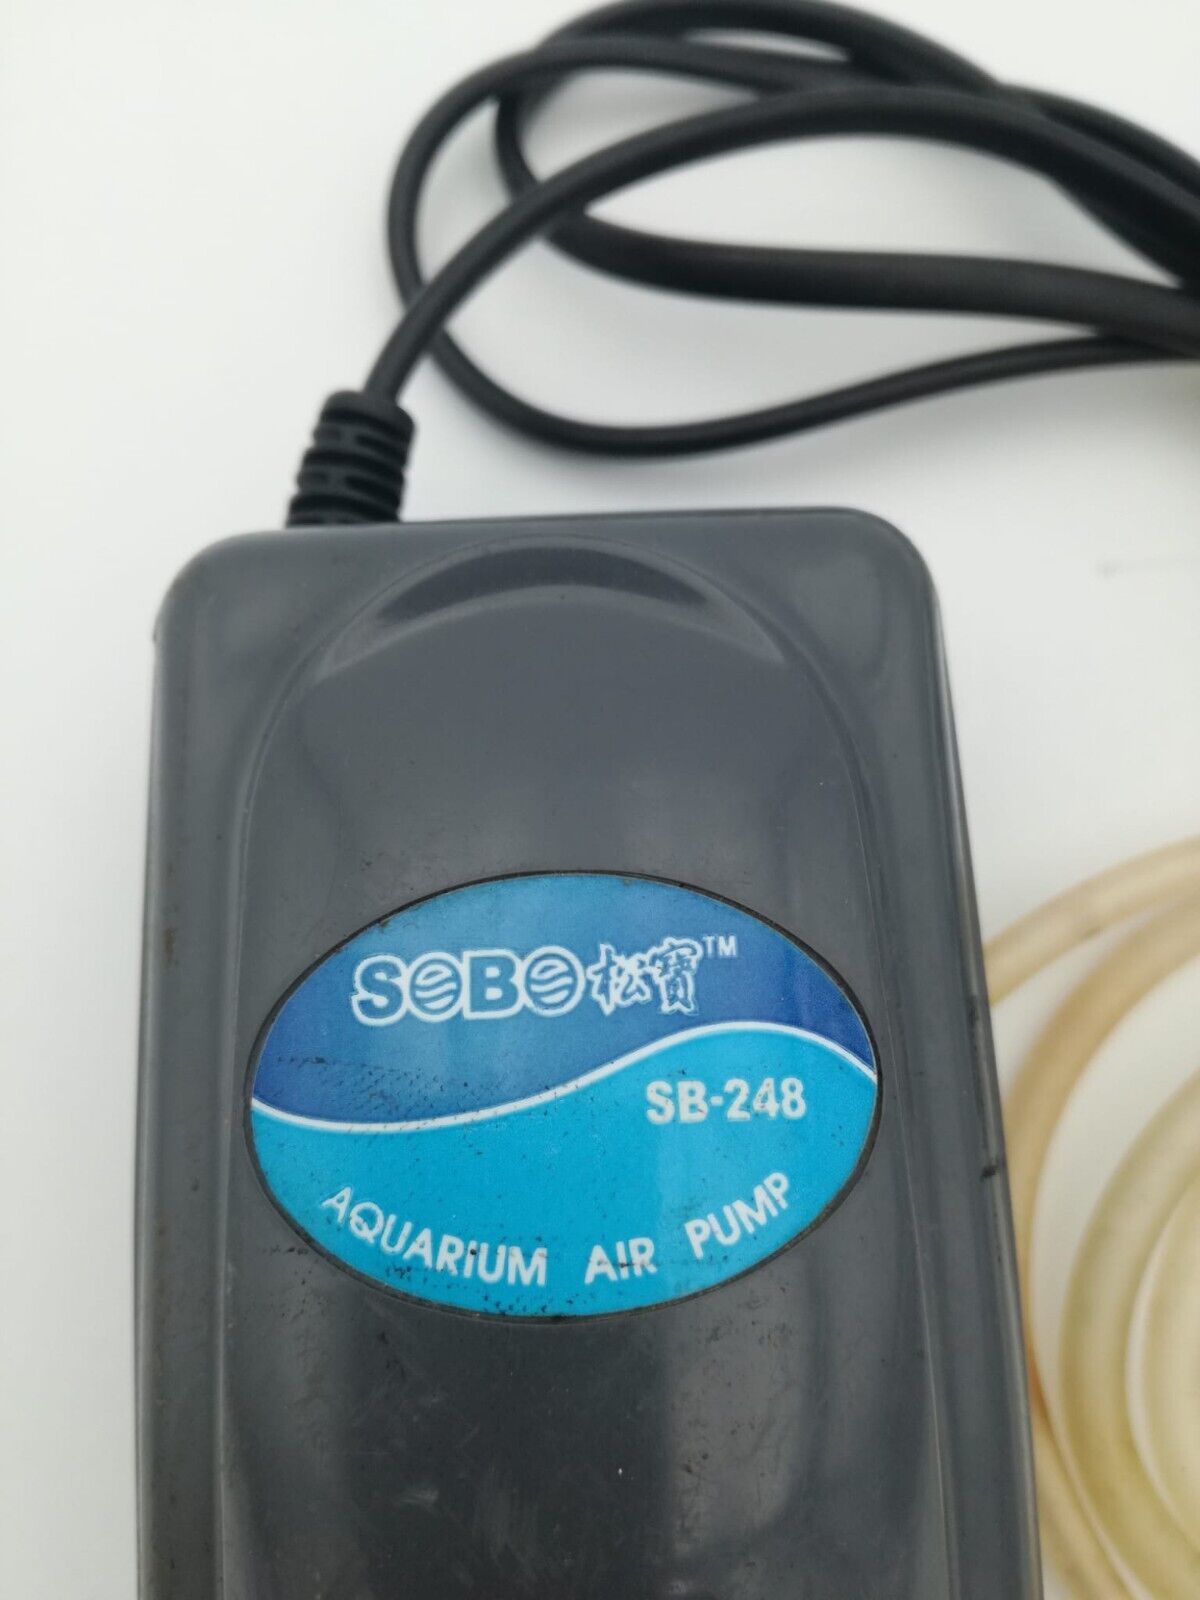 pompa per acquario usata funzionante SB-248 220v